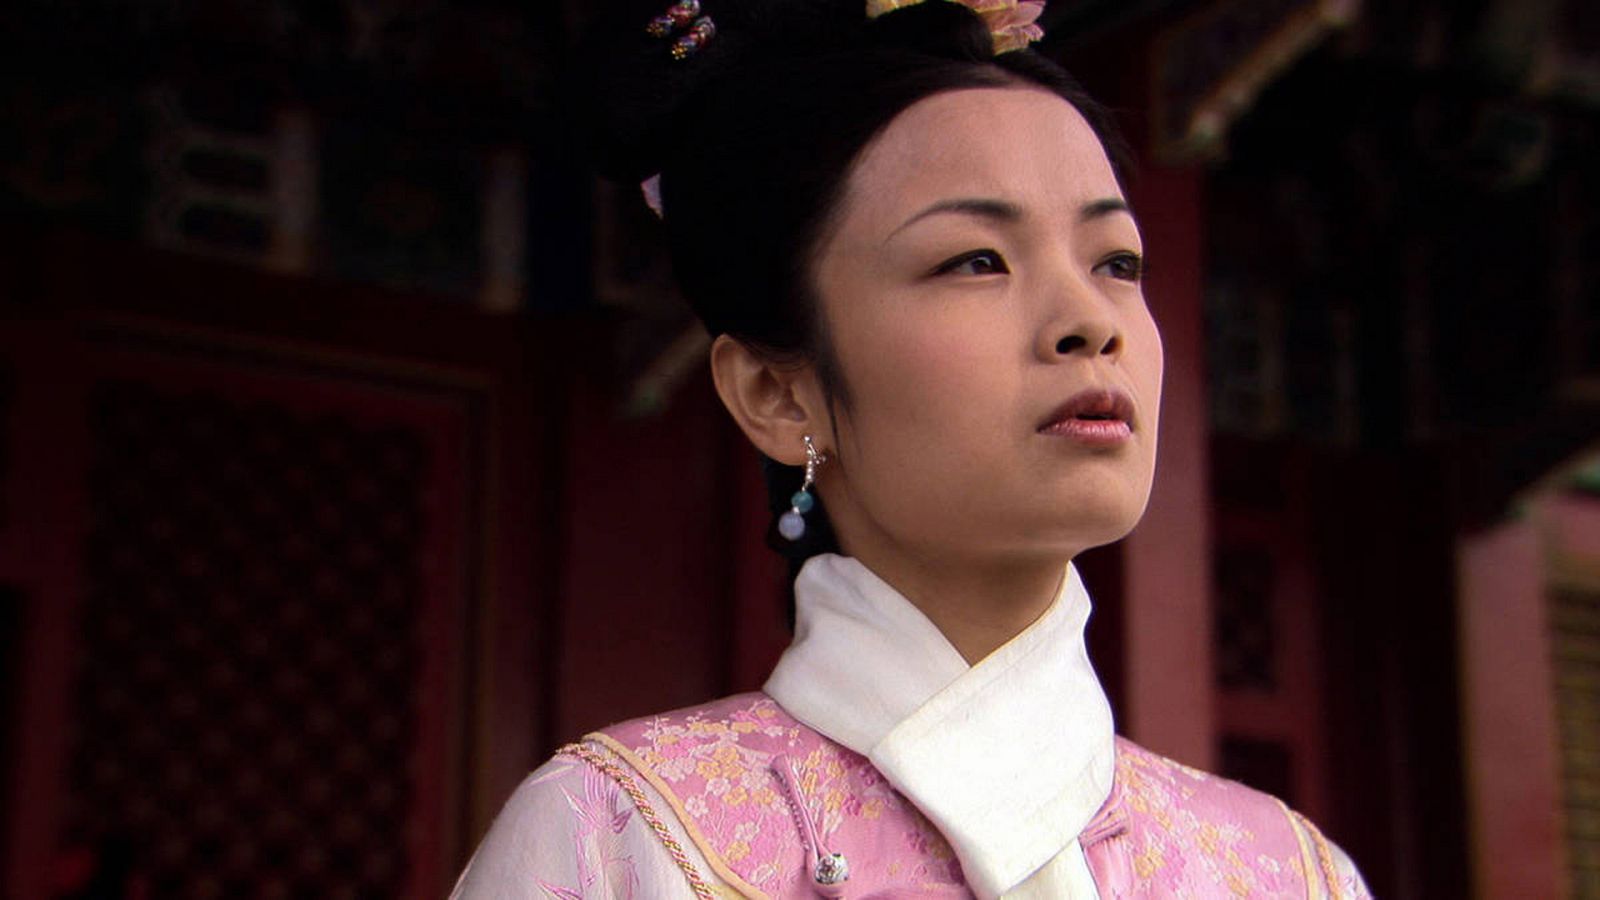 La ciudad prohibida de China - Episodio 1: El reinado de la concubina - Documental en RTVE